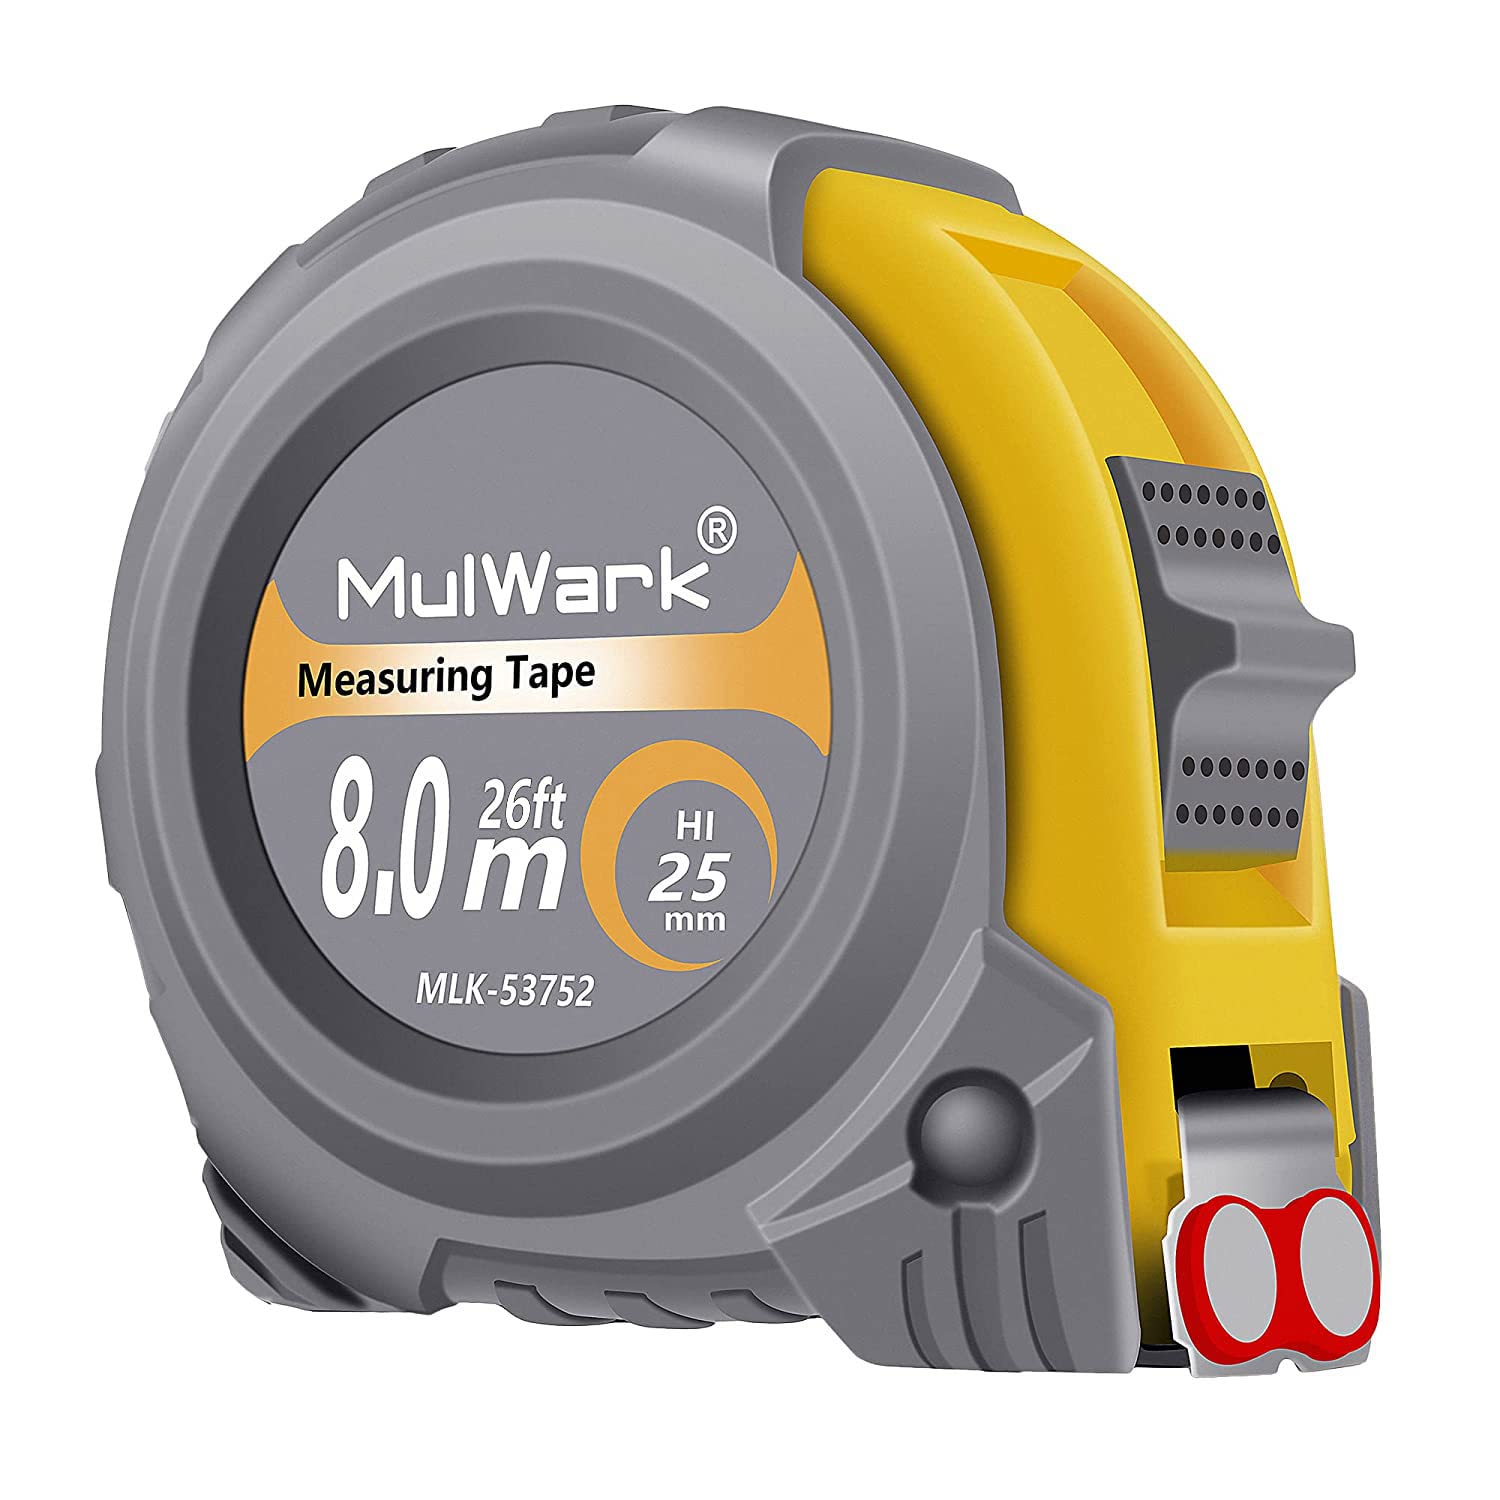 Mulwark Measuring Tape